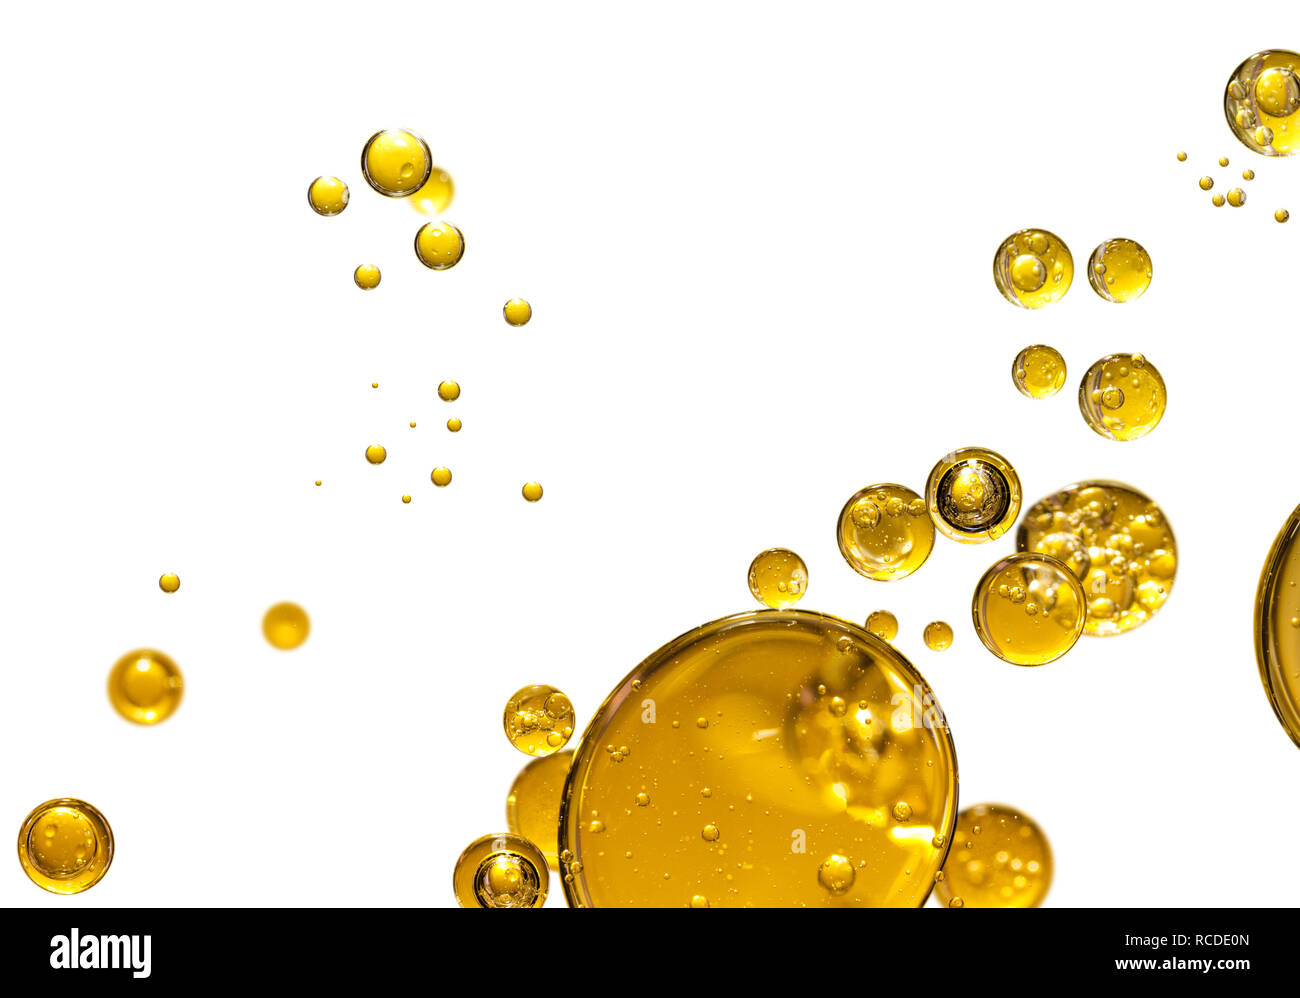 Пузырьки в масле. Желтые пузыри. Пузырек с маслом. Желтые пузыри на прозрачном фоне. Желтые пузыри в масле.